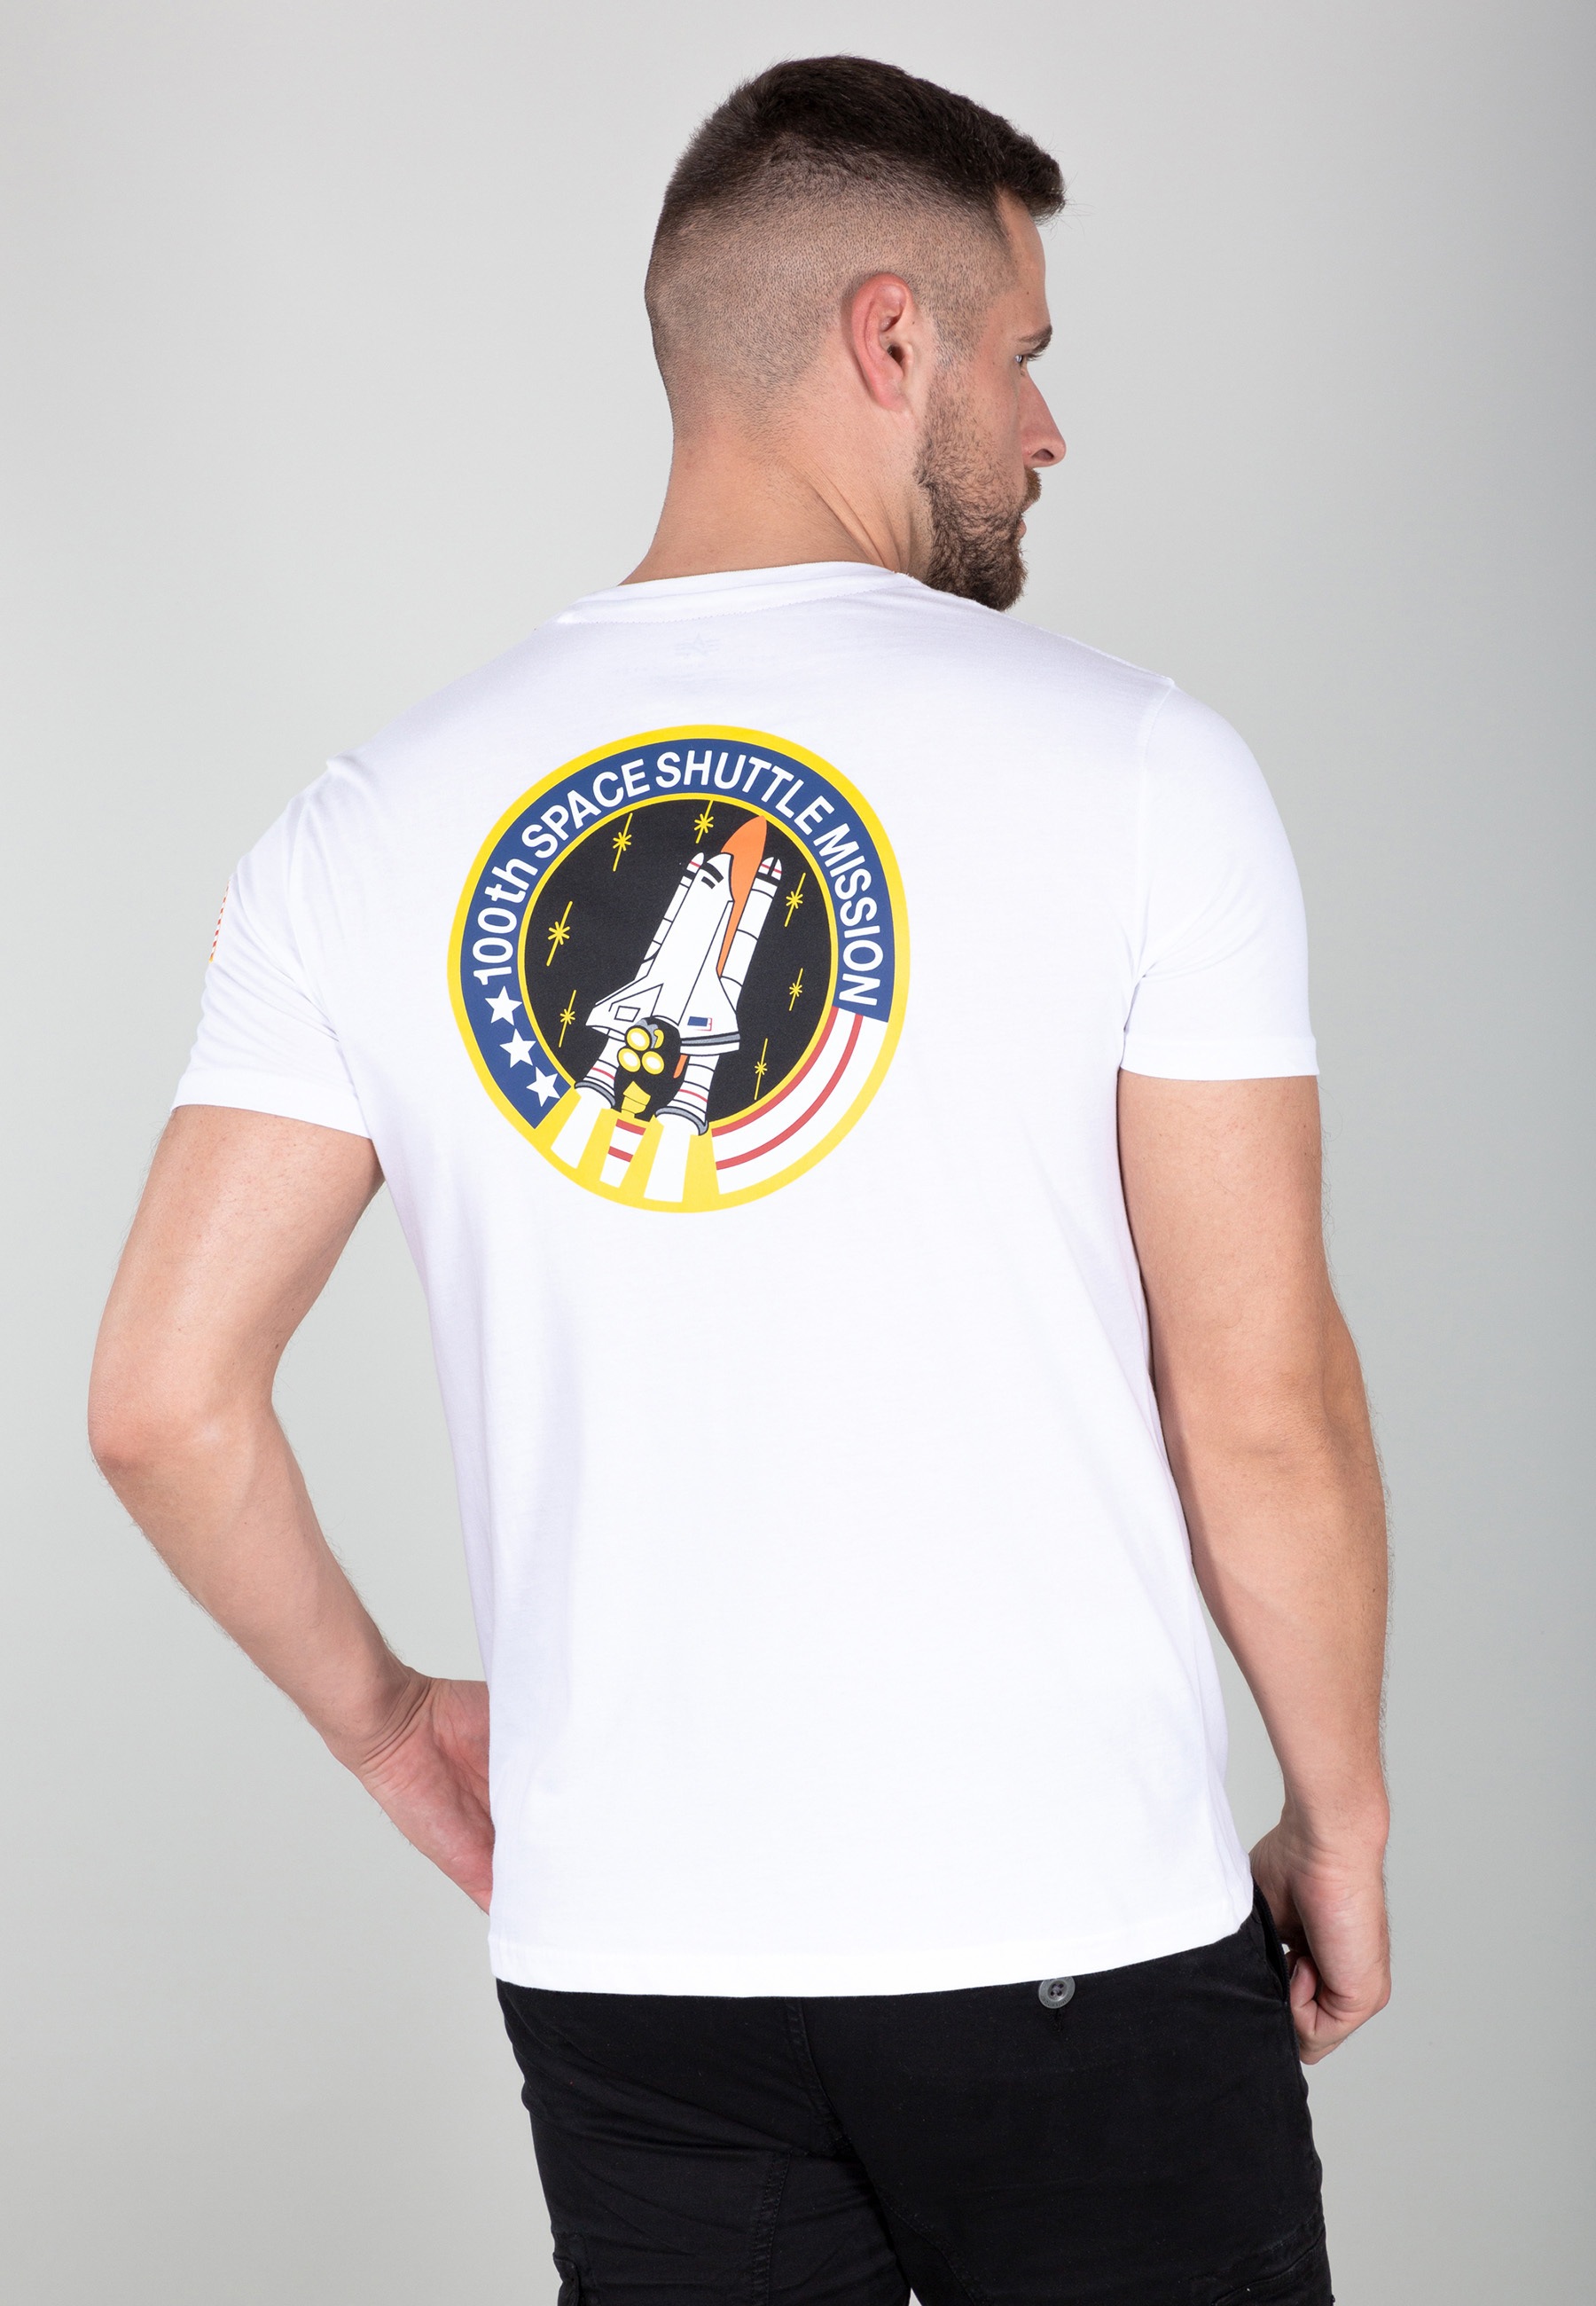 »Alpha T-Shirts Industries Shuttle Men online - Alpha T« Industries bestellen Space T-Shirt